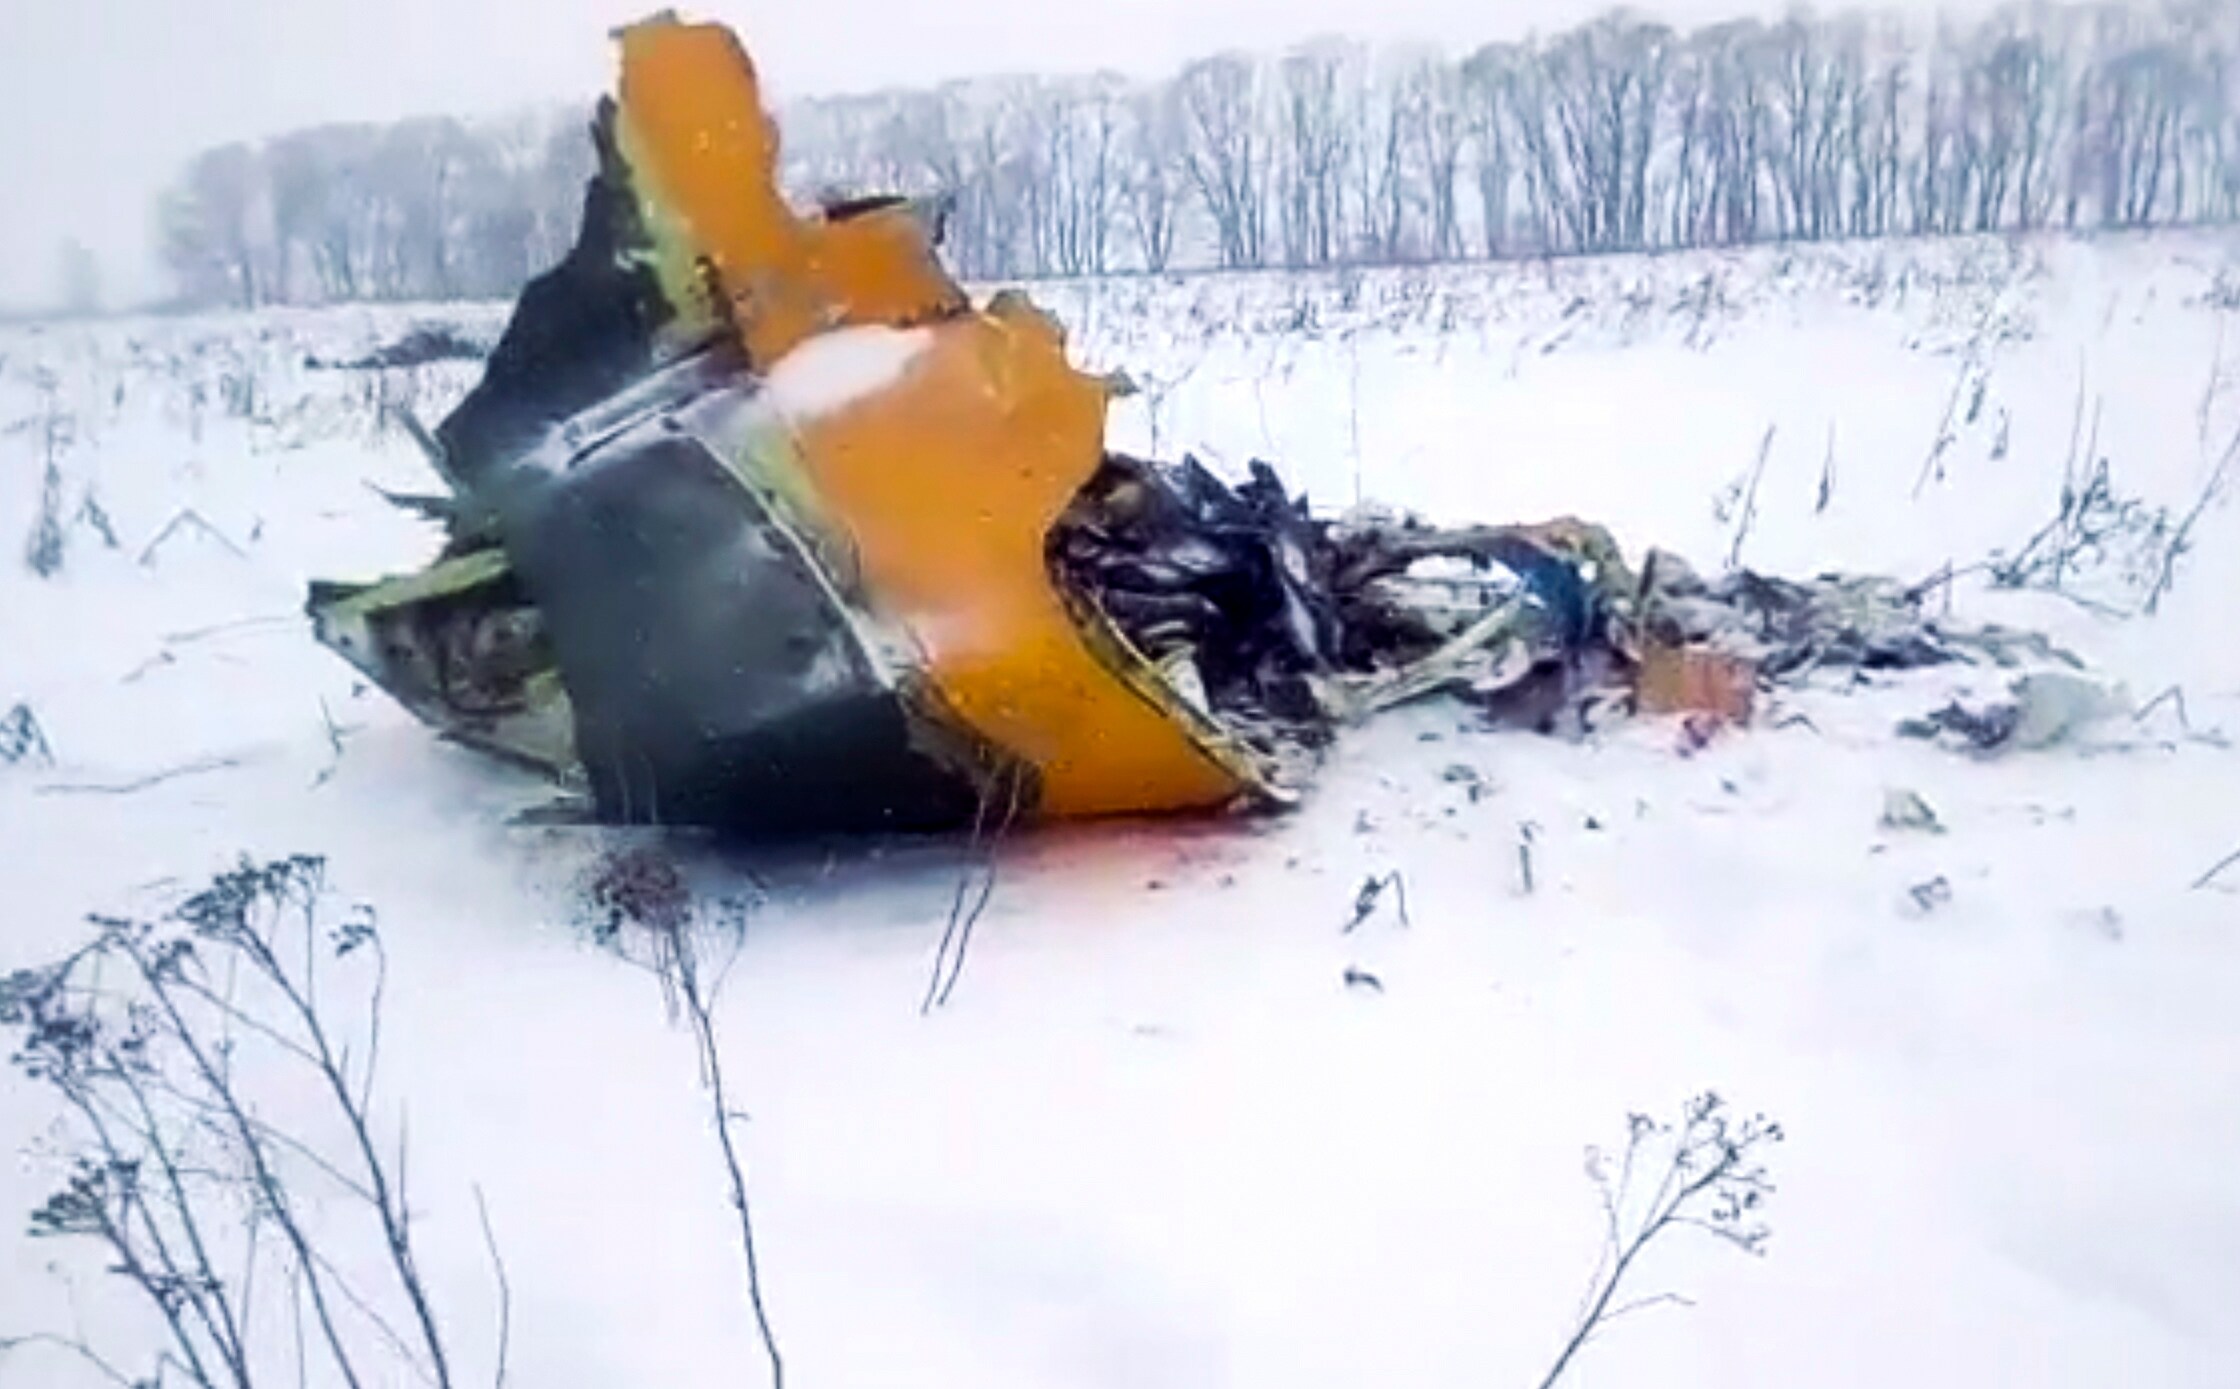 Russisch Saratov Airlines vliegtuig crasht in Moskou: 71 doden